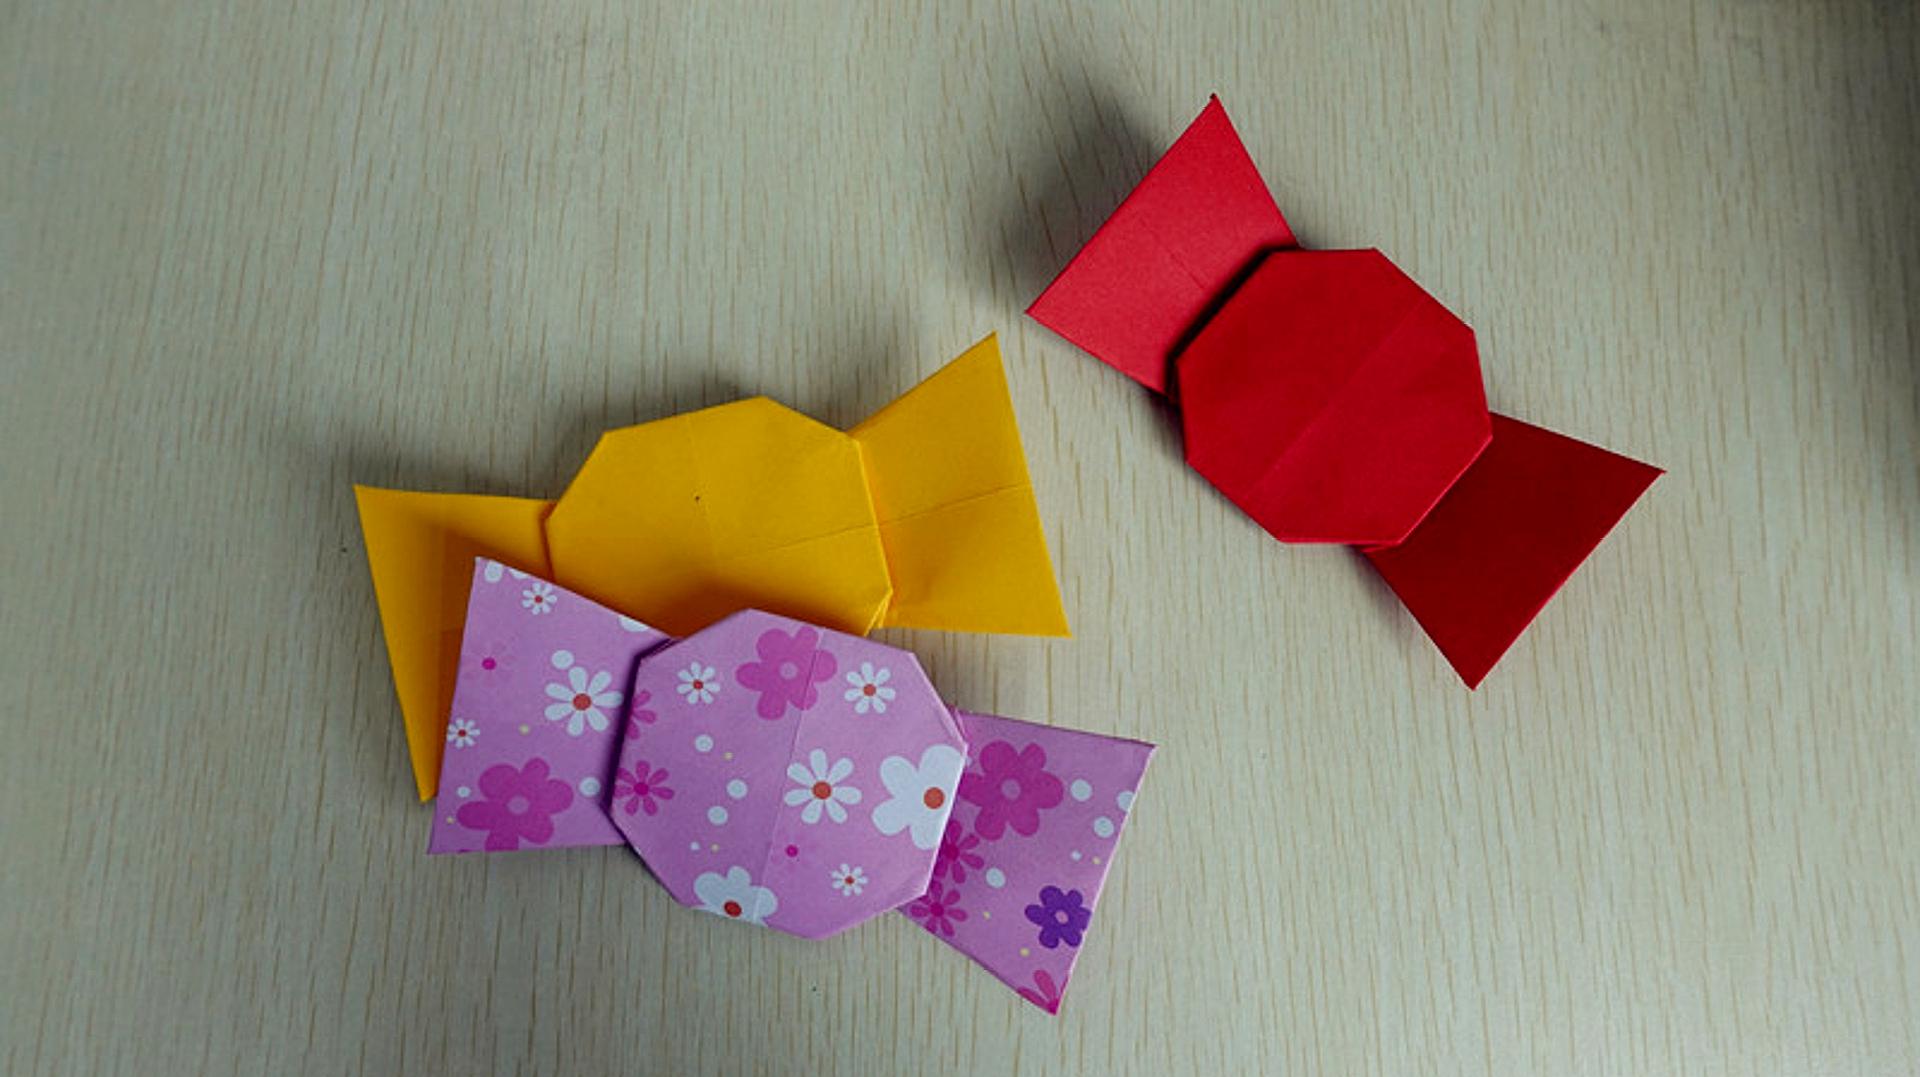 折纸教程:教你折一颗甜甜的糖果,步骤特别简单,一遍就能学会